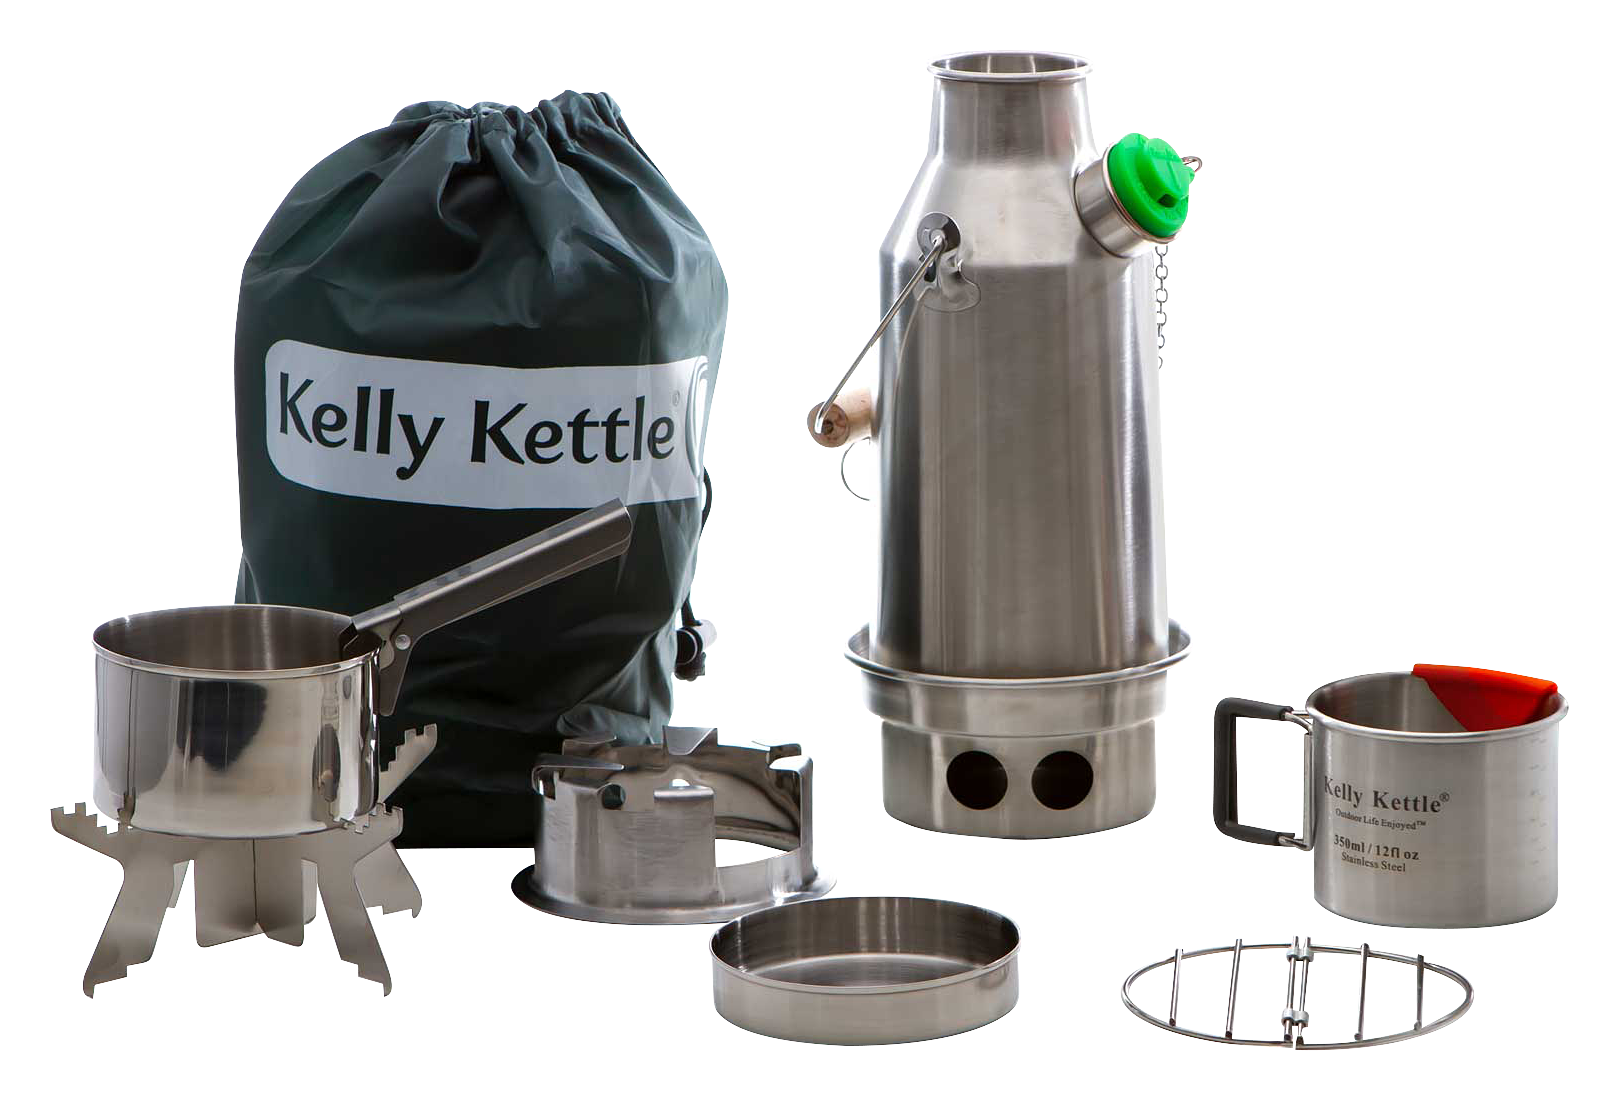 Kelly kettle